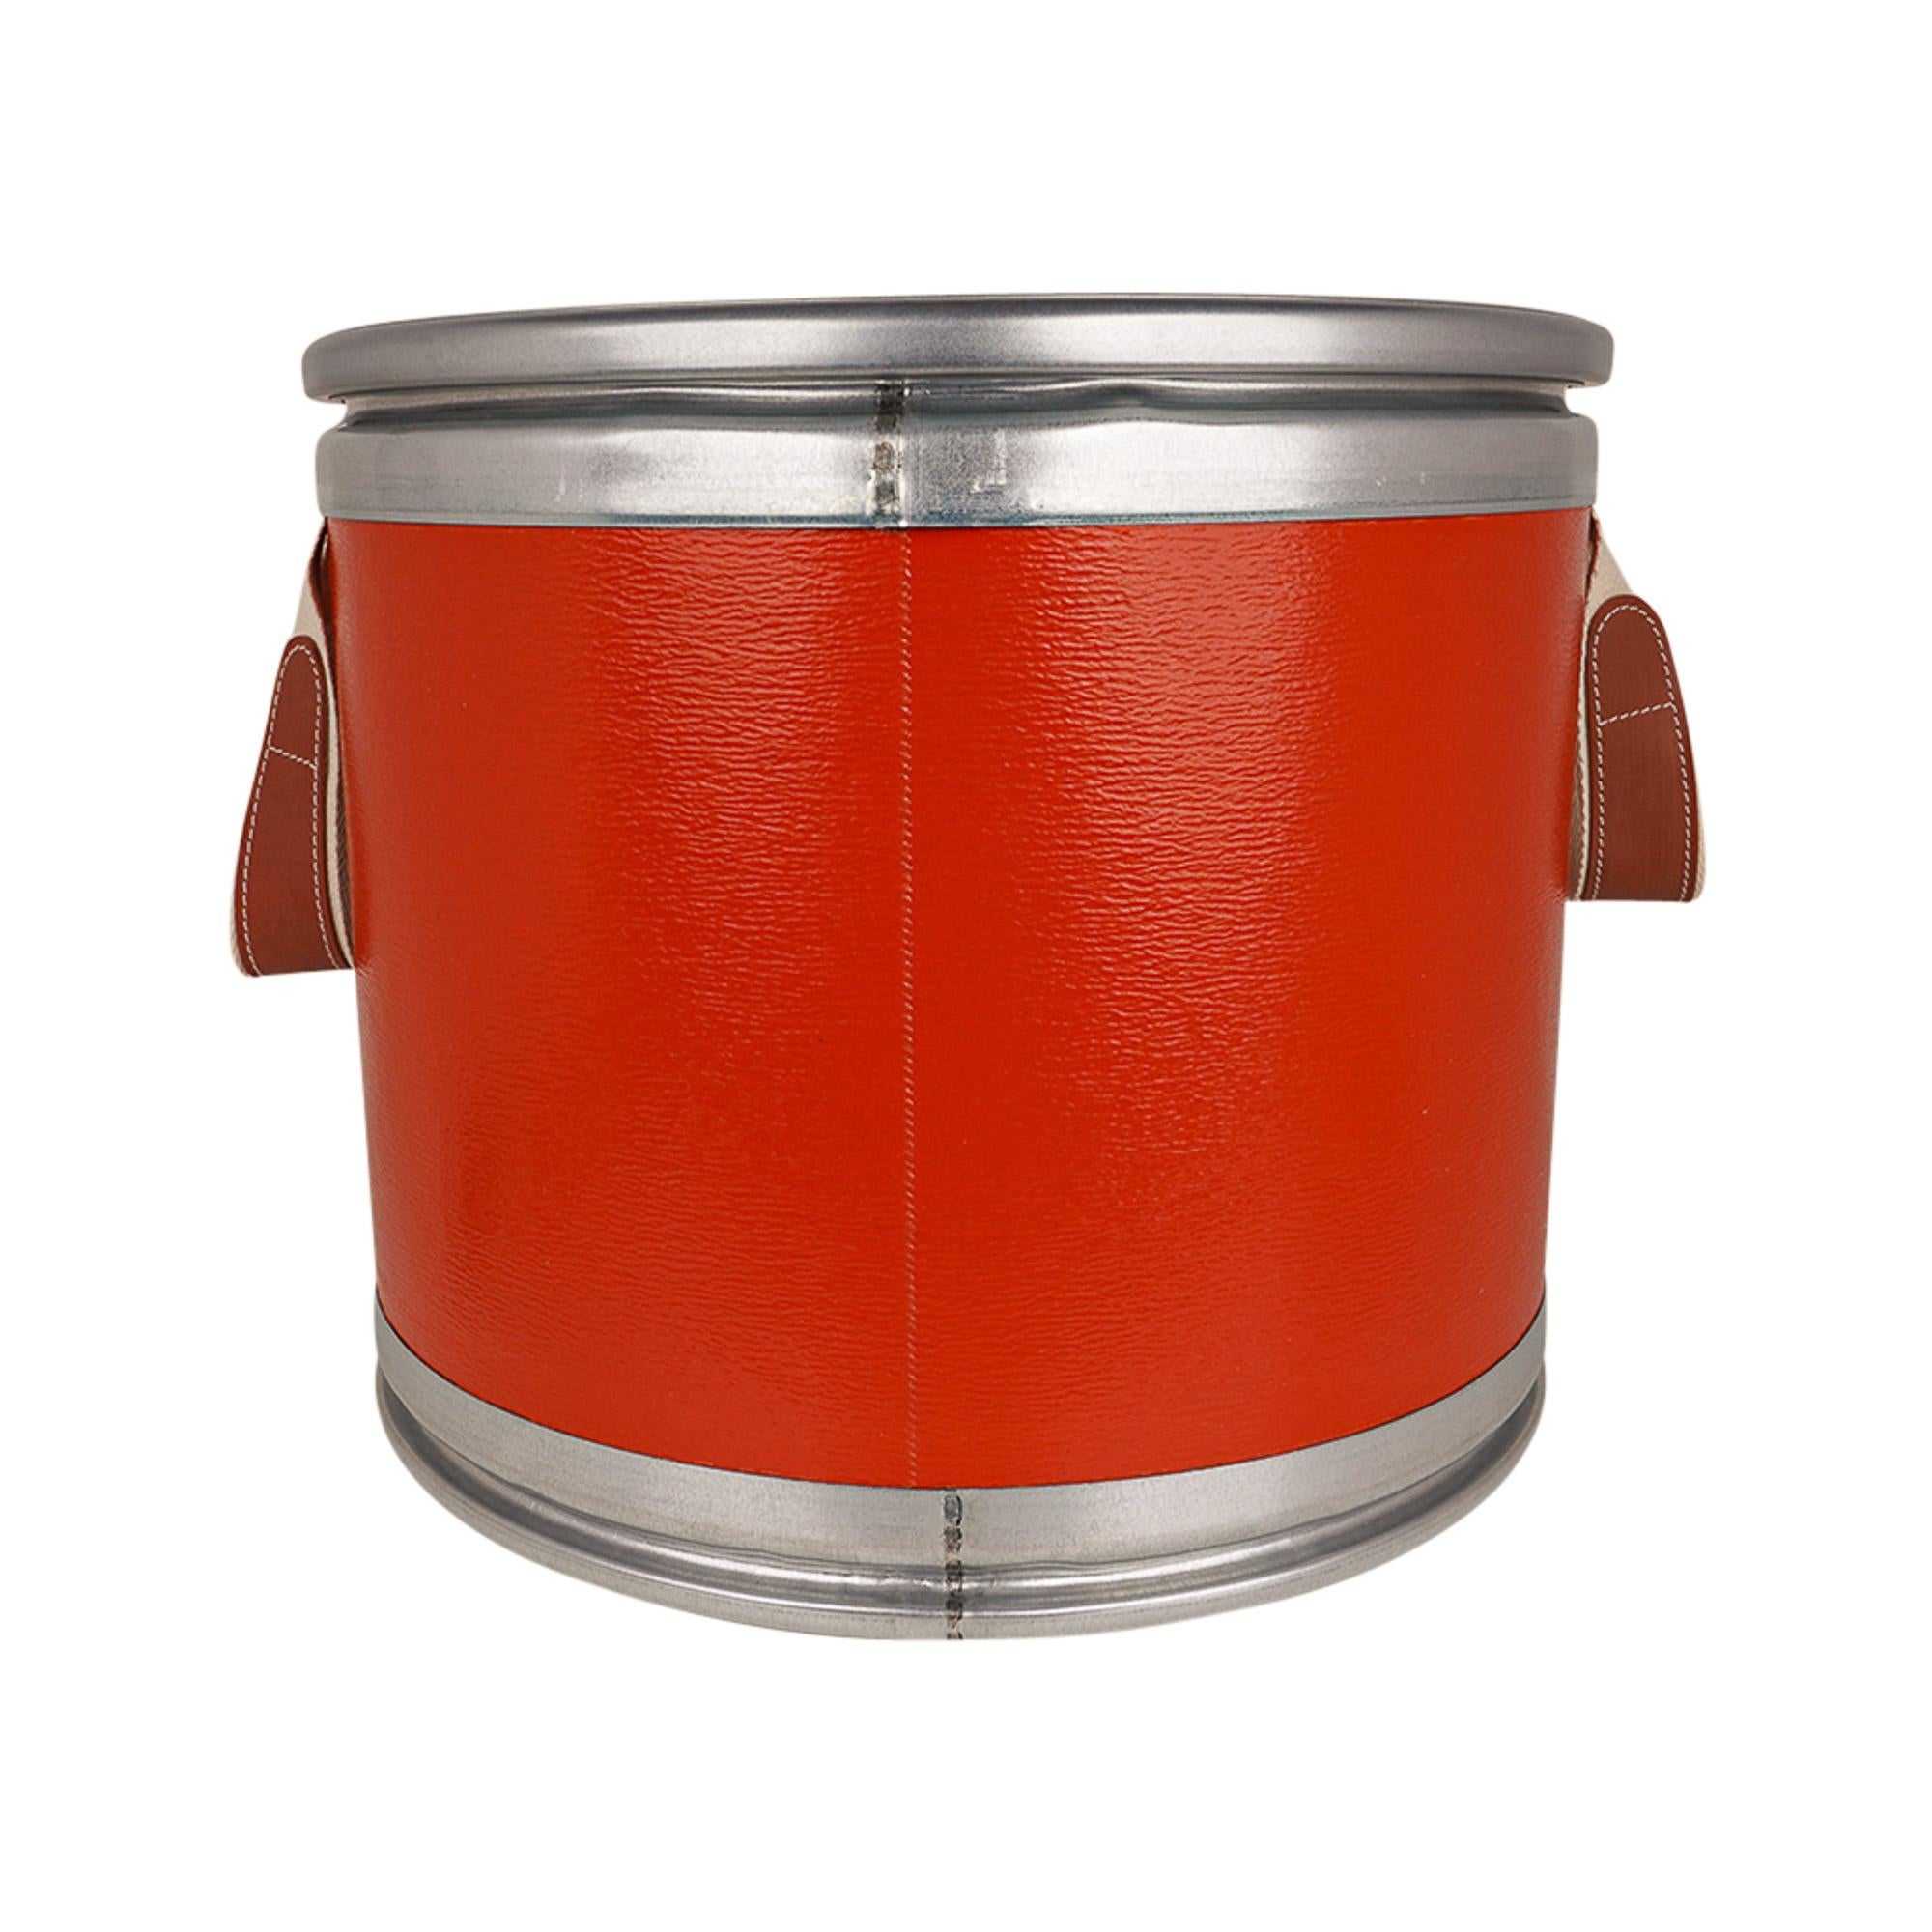 Hermes Saddle Box Orange Recycled Kraft Paper / Leather / Aluminum New 1